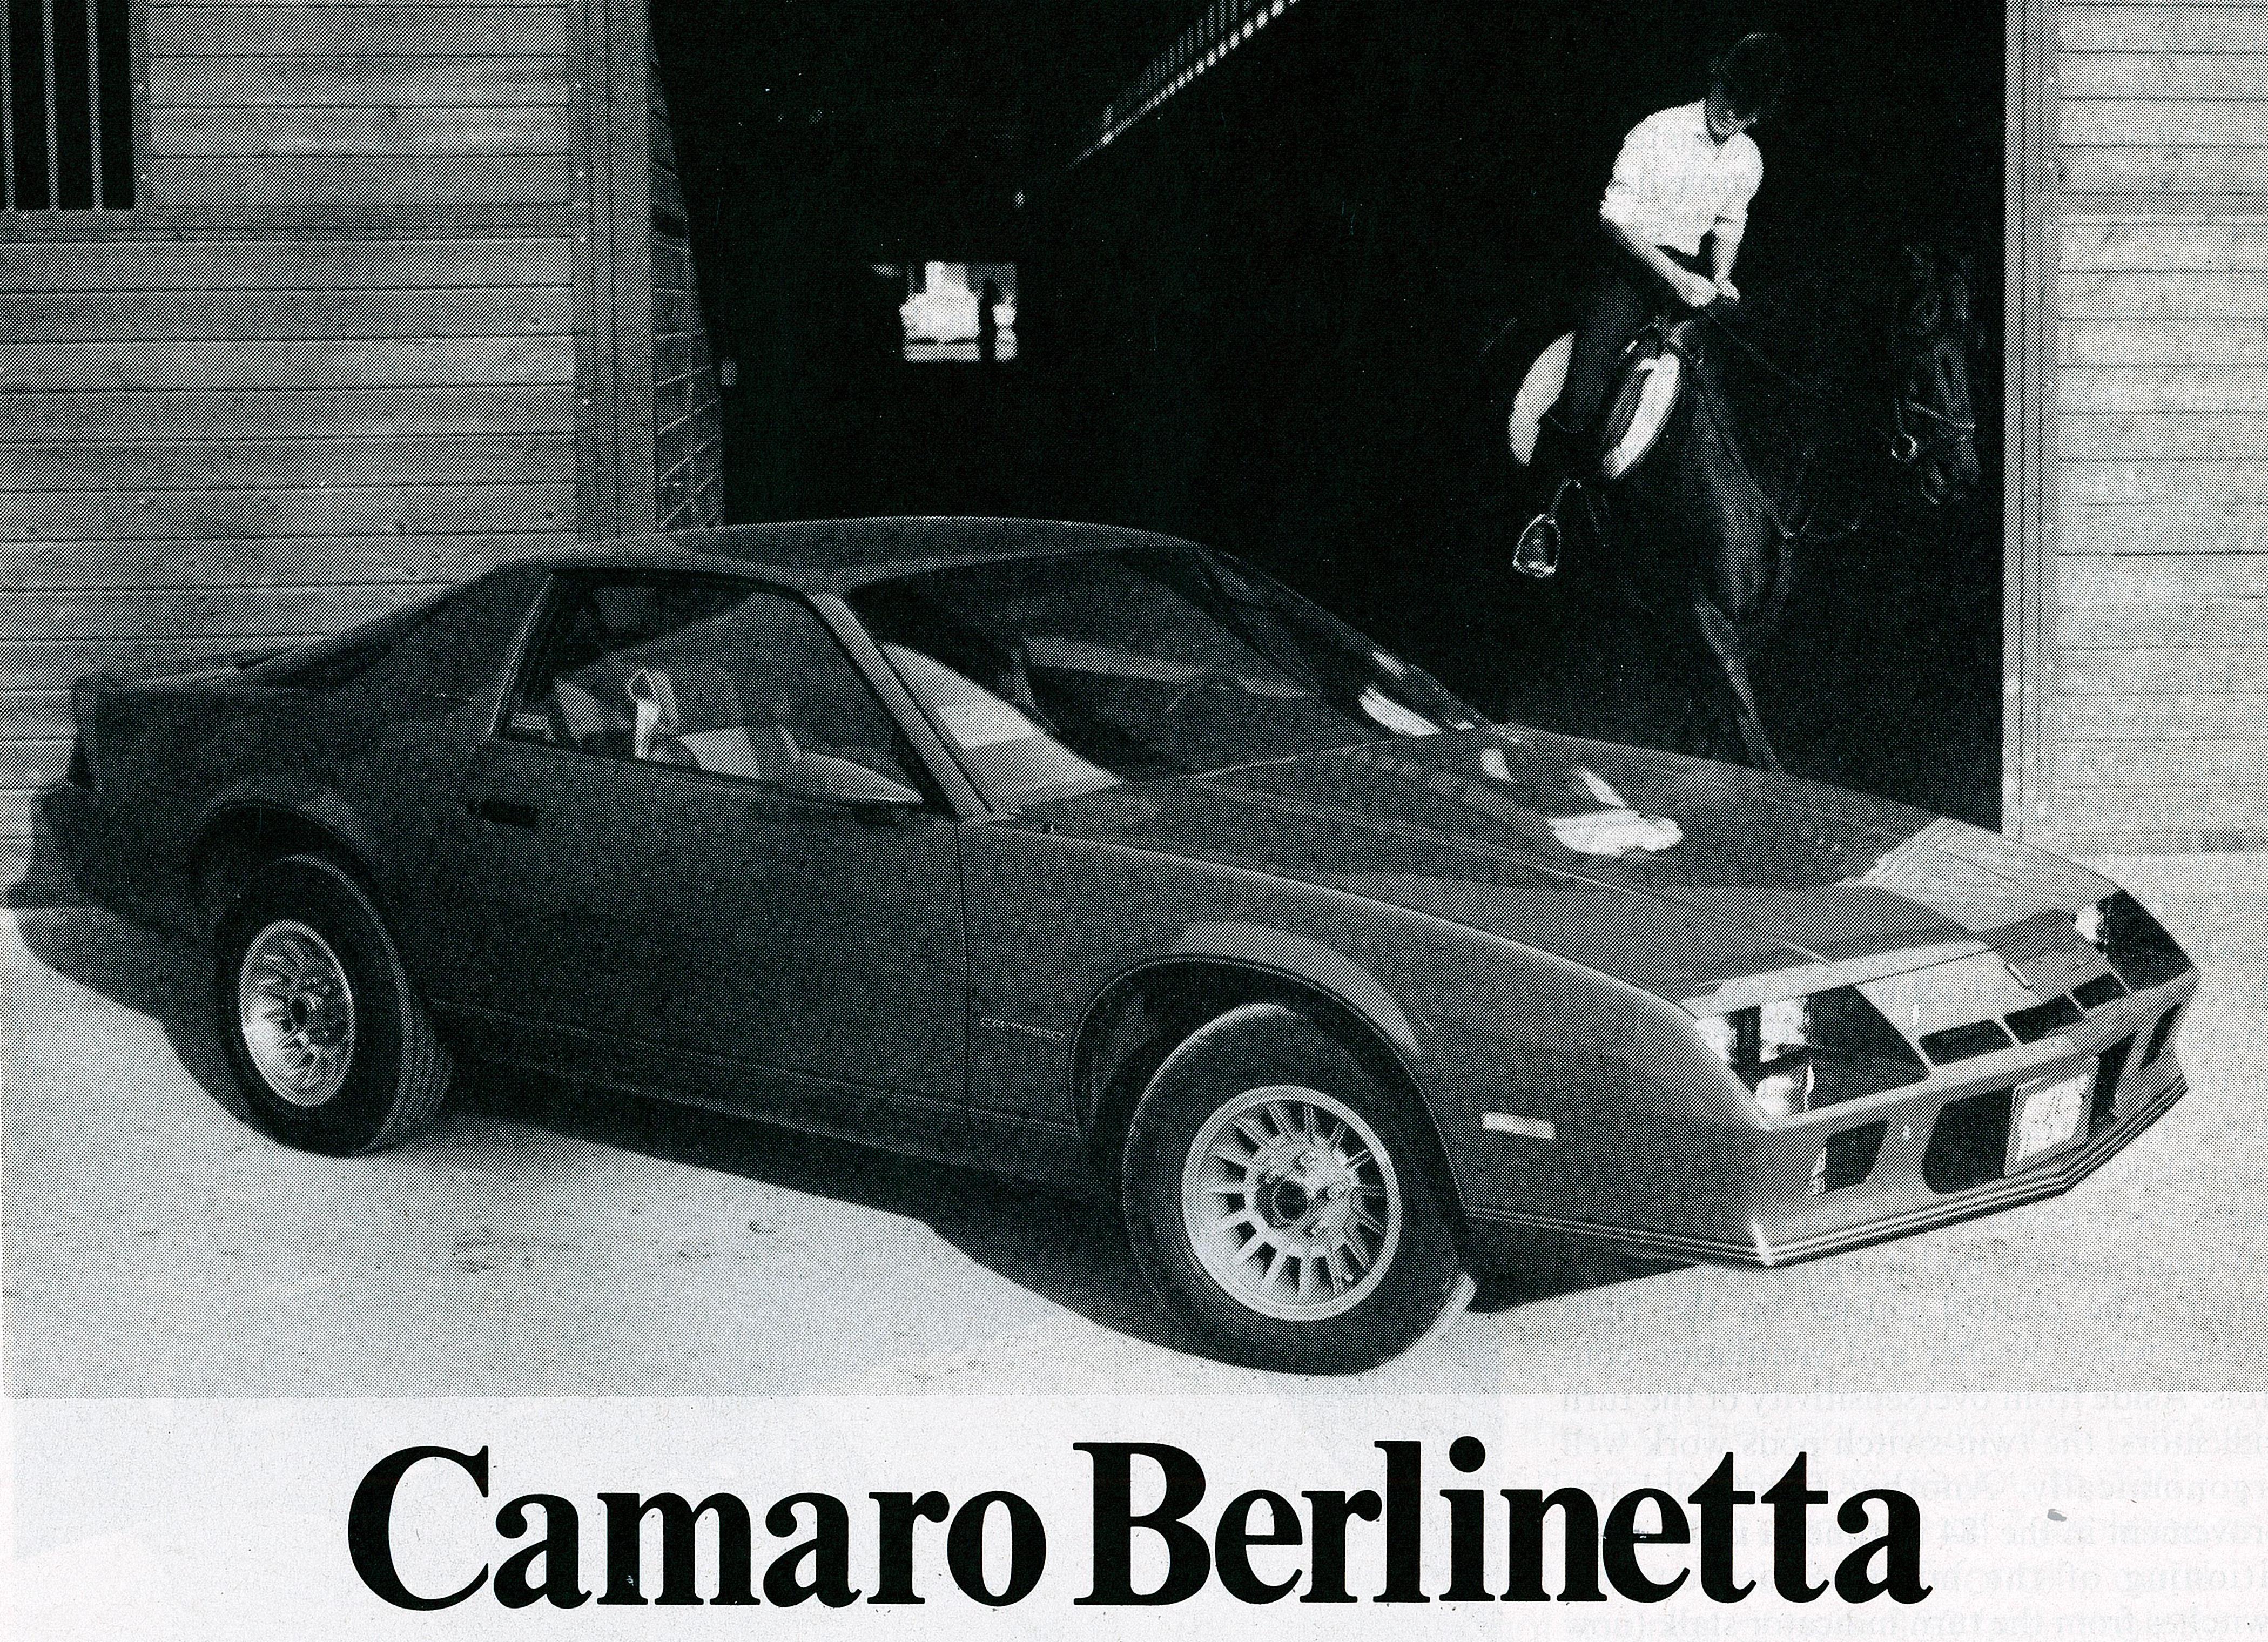 Camaro Berlinetta